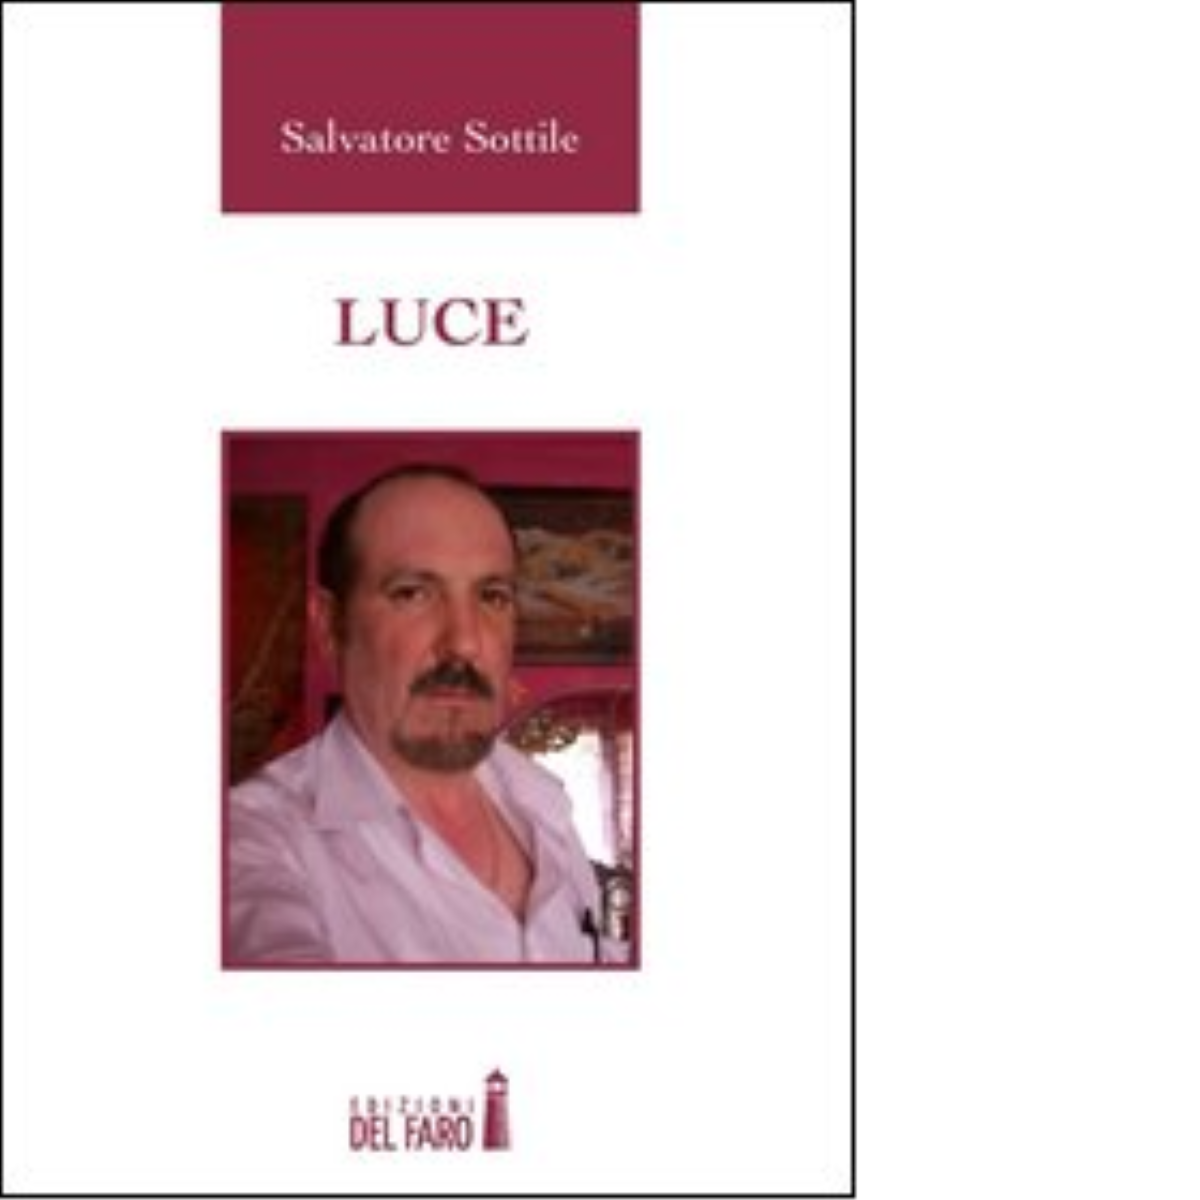 LUCE di Sottile Salvatore - Edizioni Del faro, 2012 libro usato